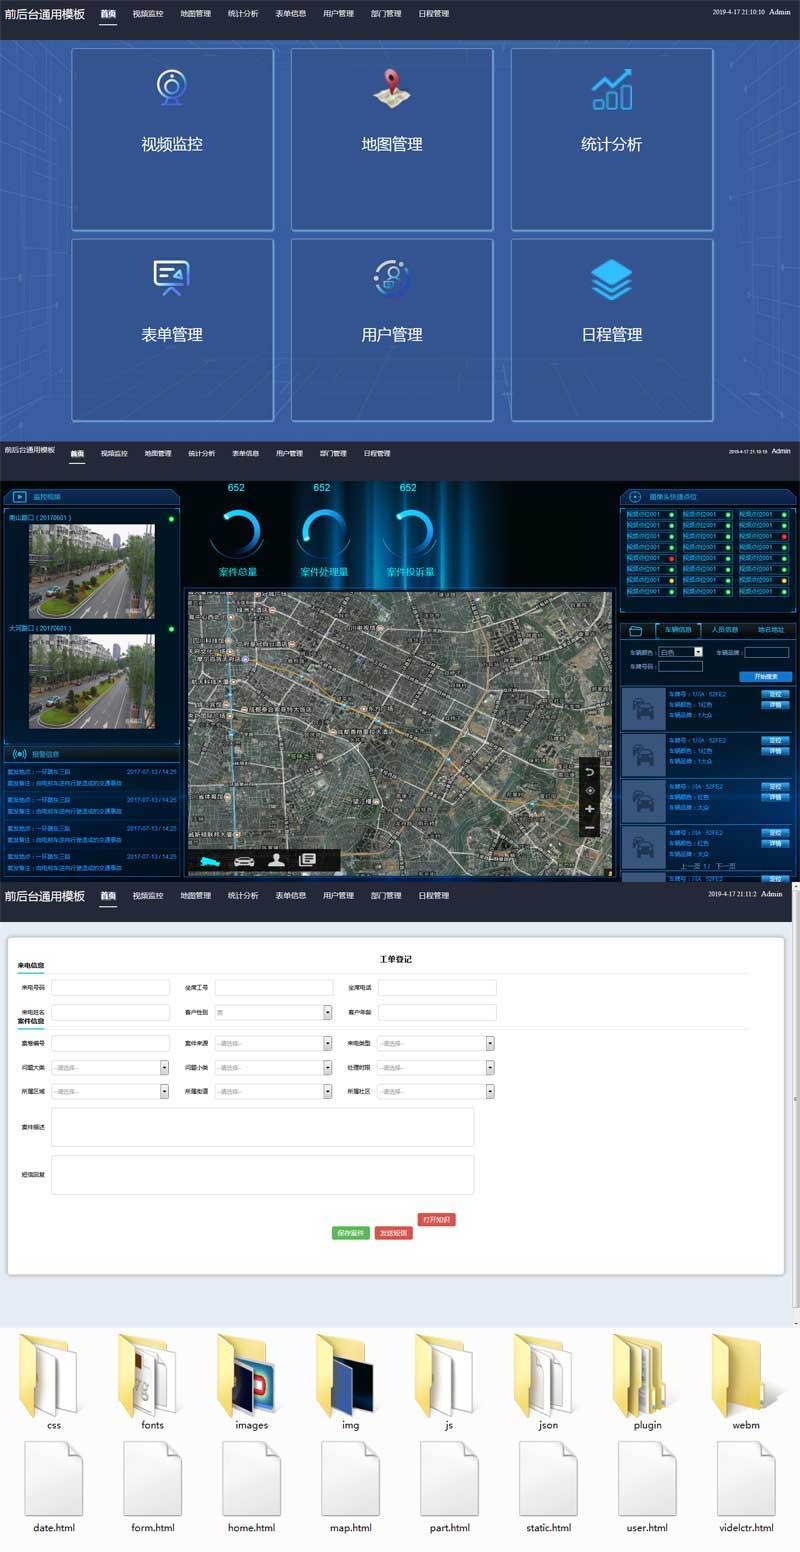 道路视频监控报警系统OA后台管理页面模板